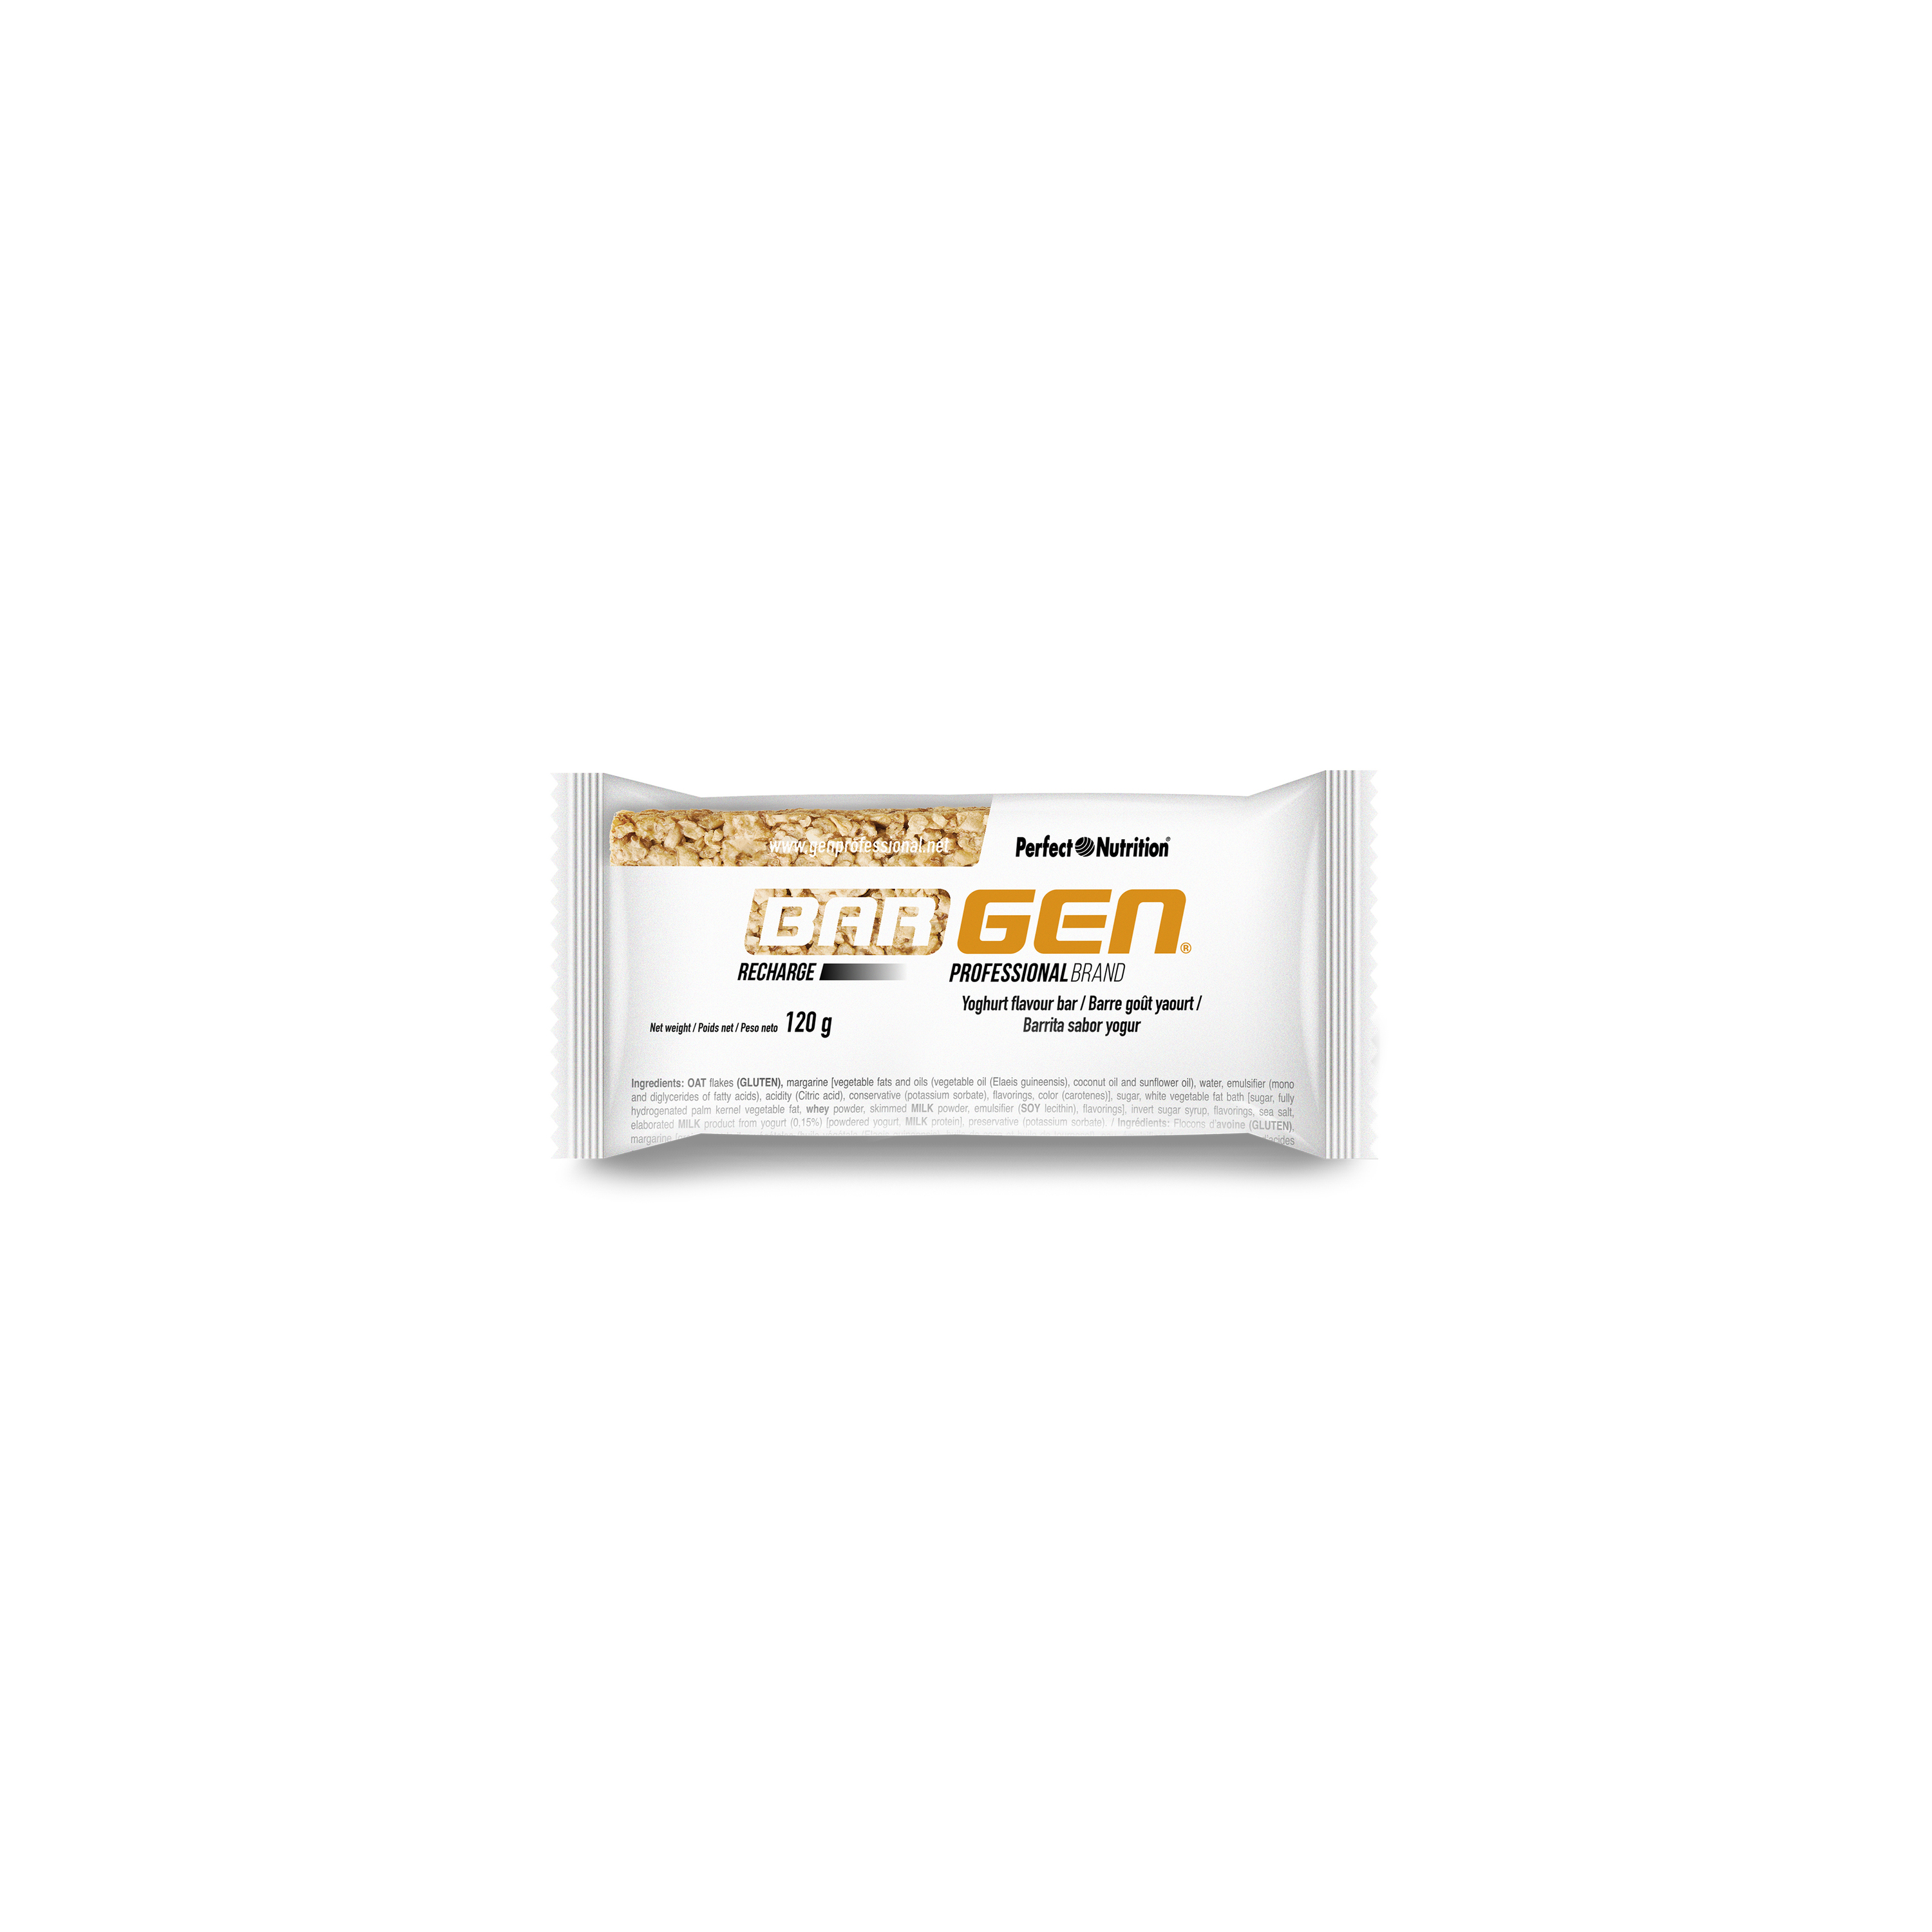 Photo Barres de nutrition yaourt Gen Professional Bargen Recharge